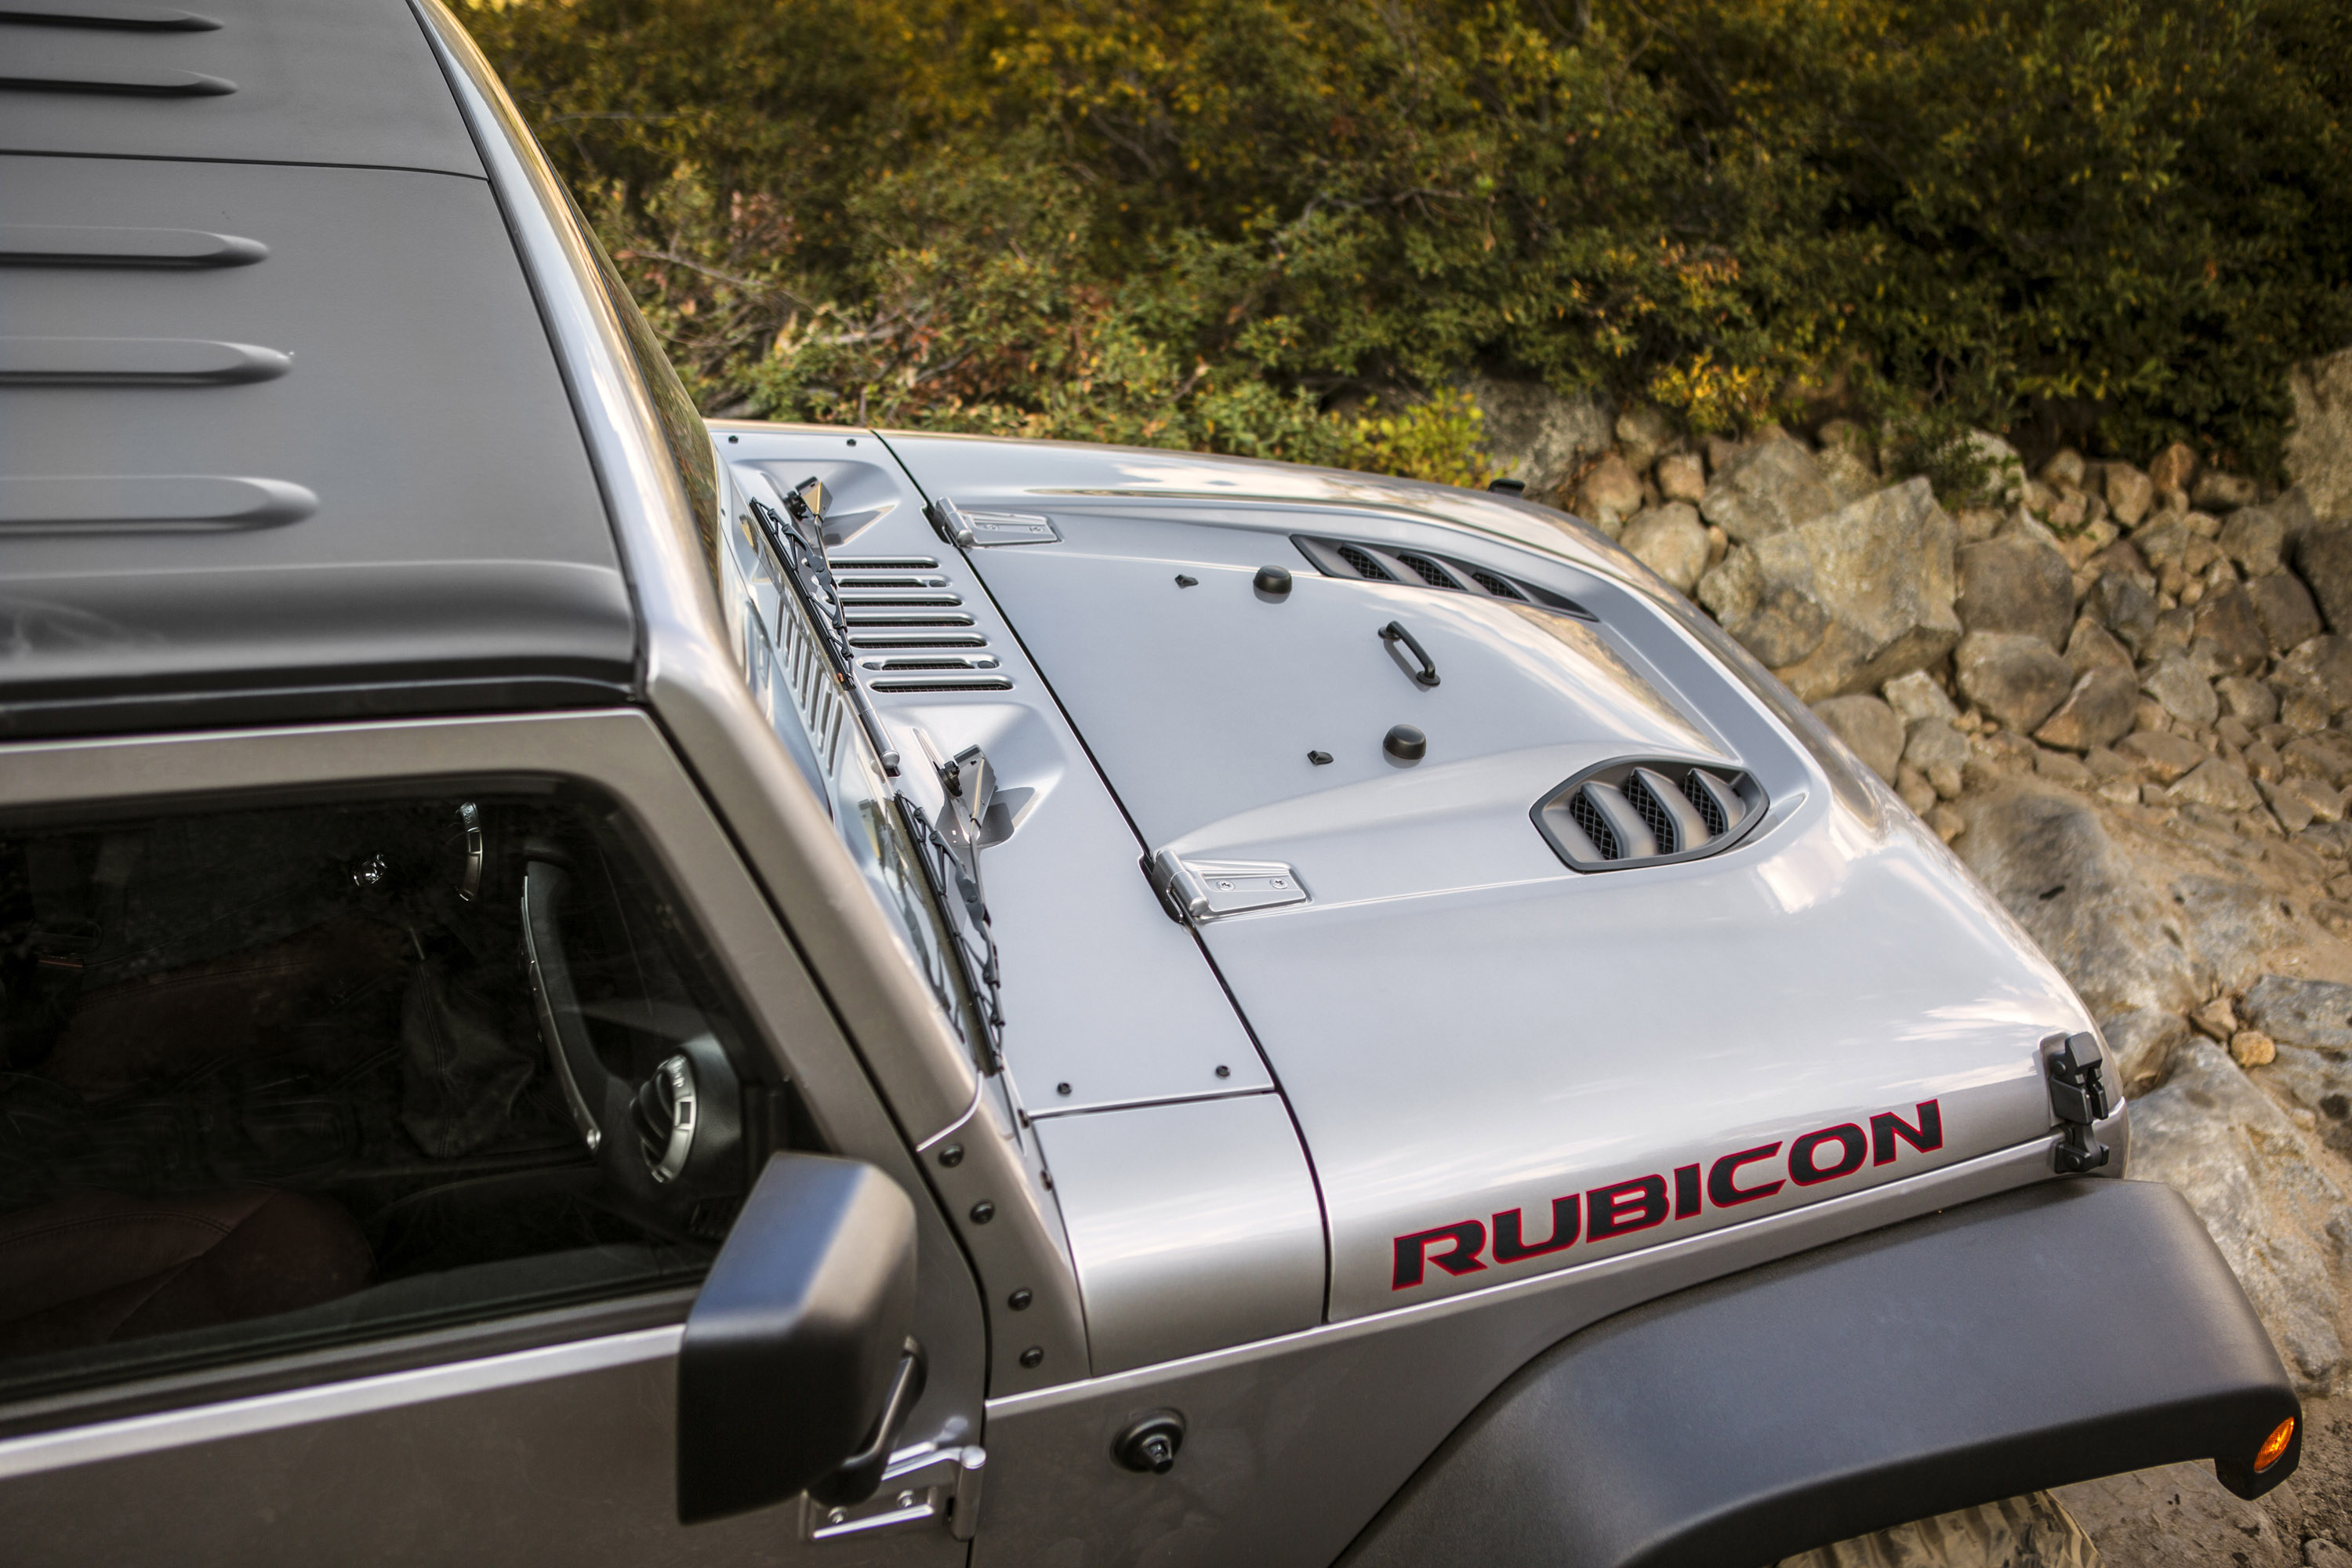 Jeep Wrangler Rubicion 10th Anniversary Edition